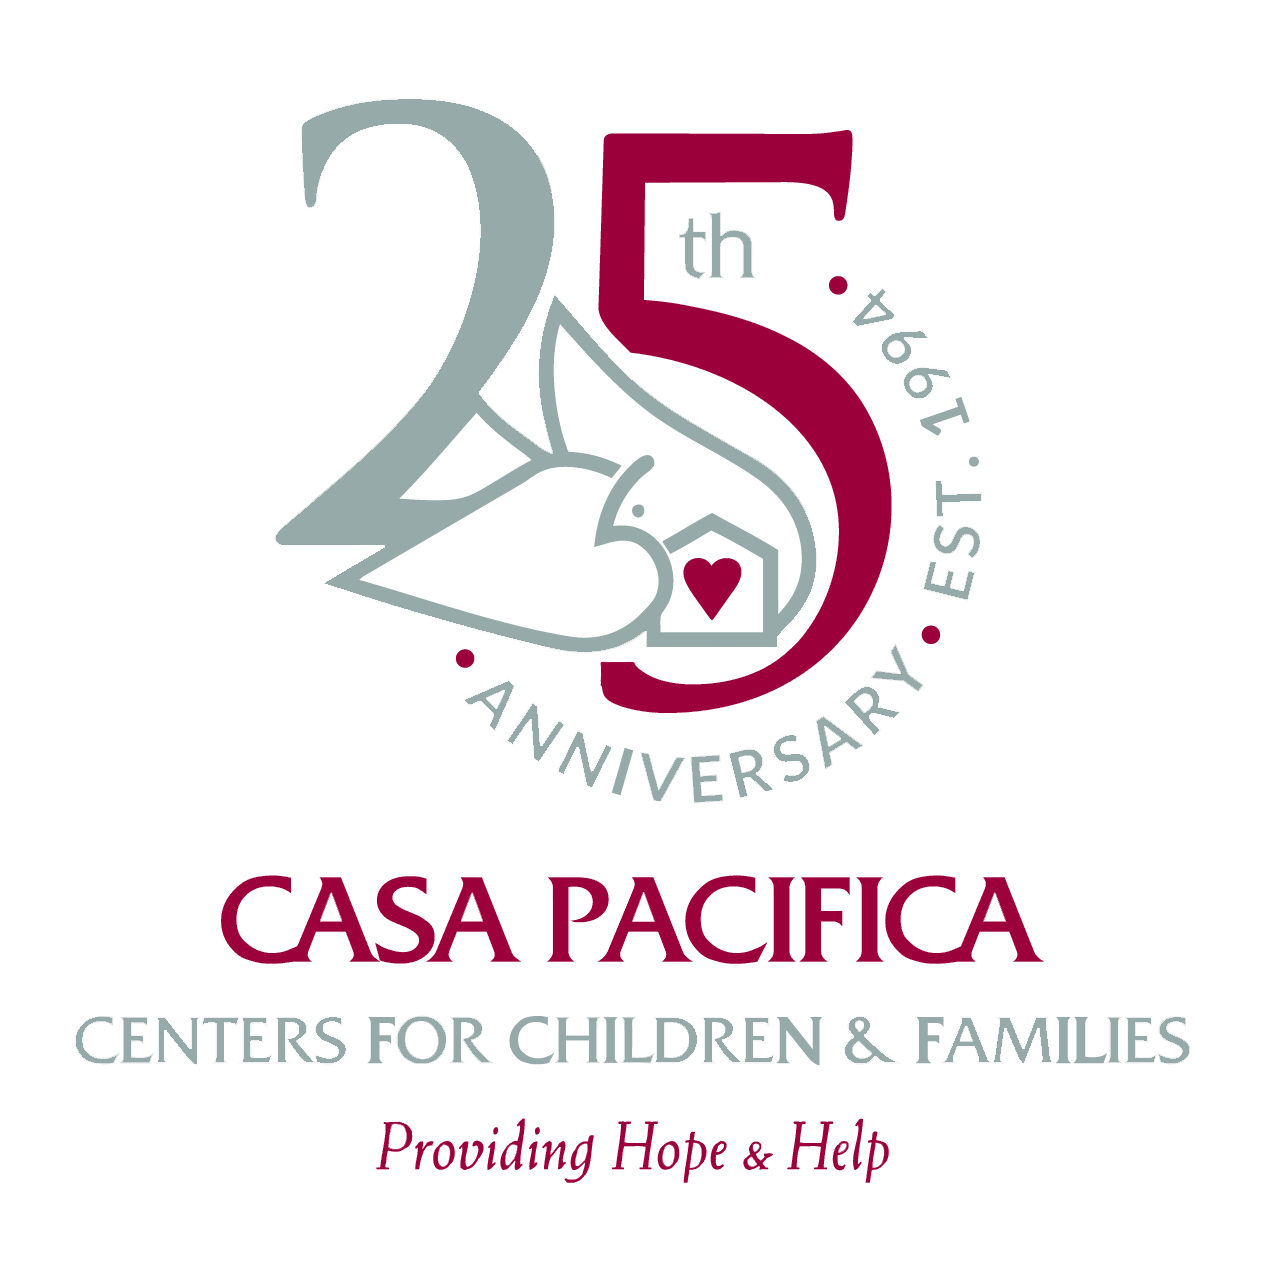 25th Anniversary Casa Pacifica Logo